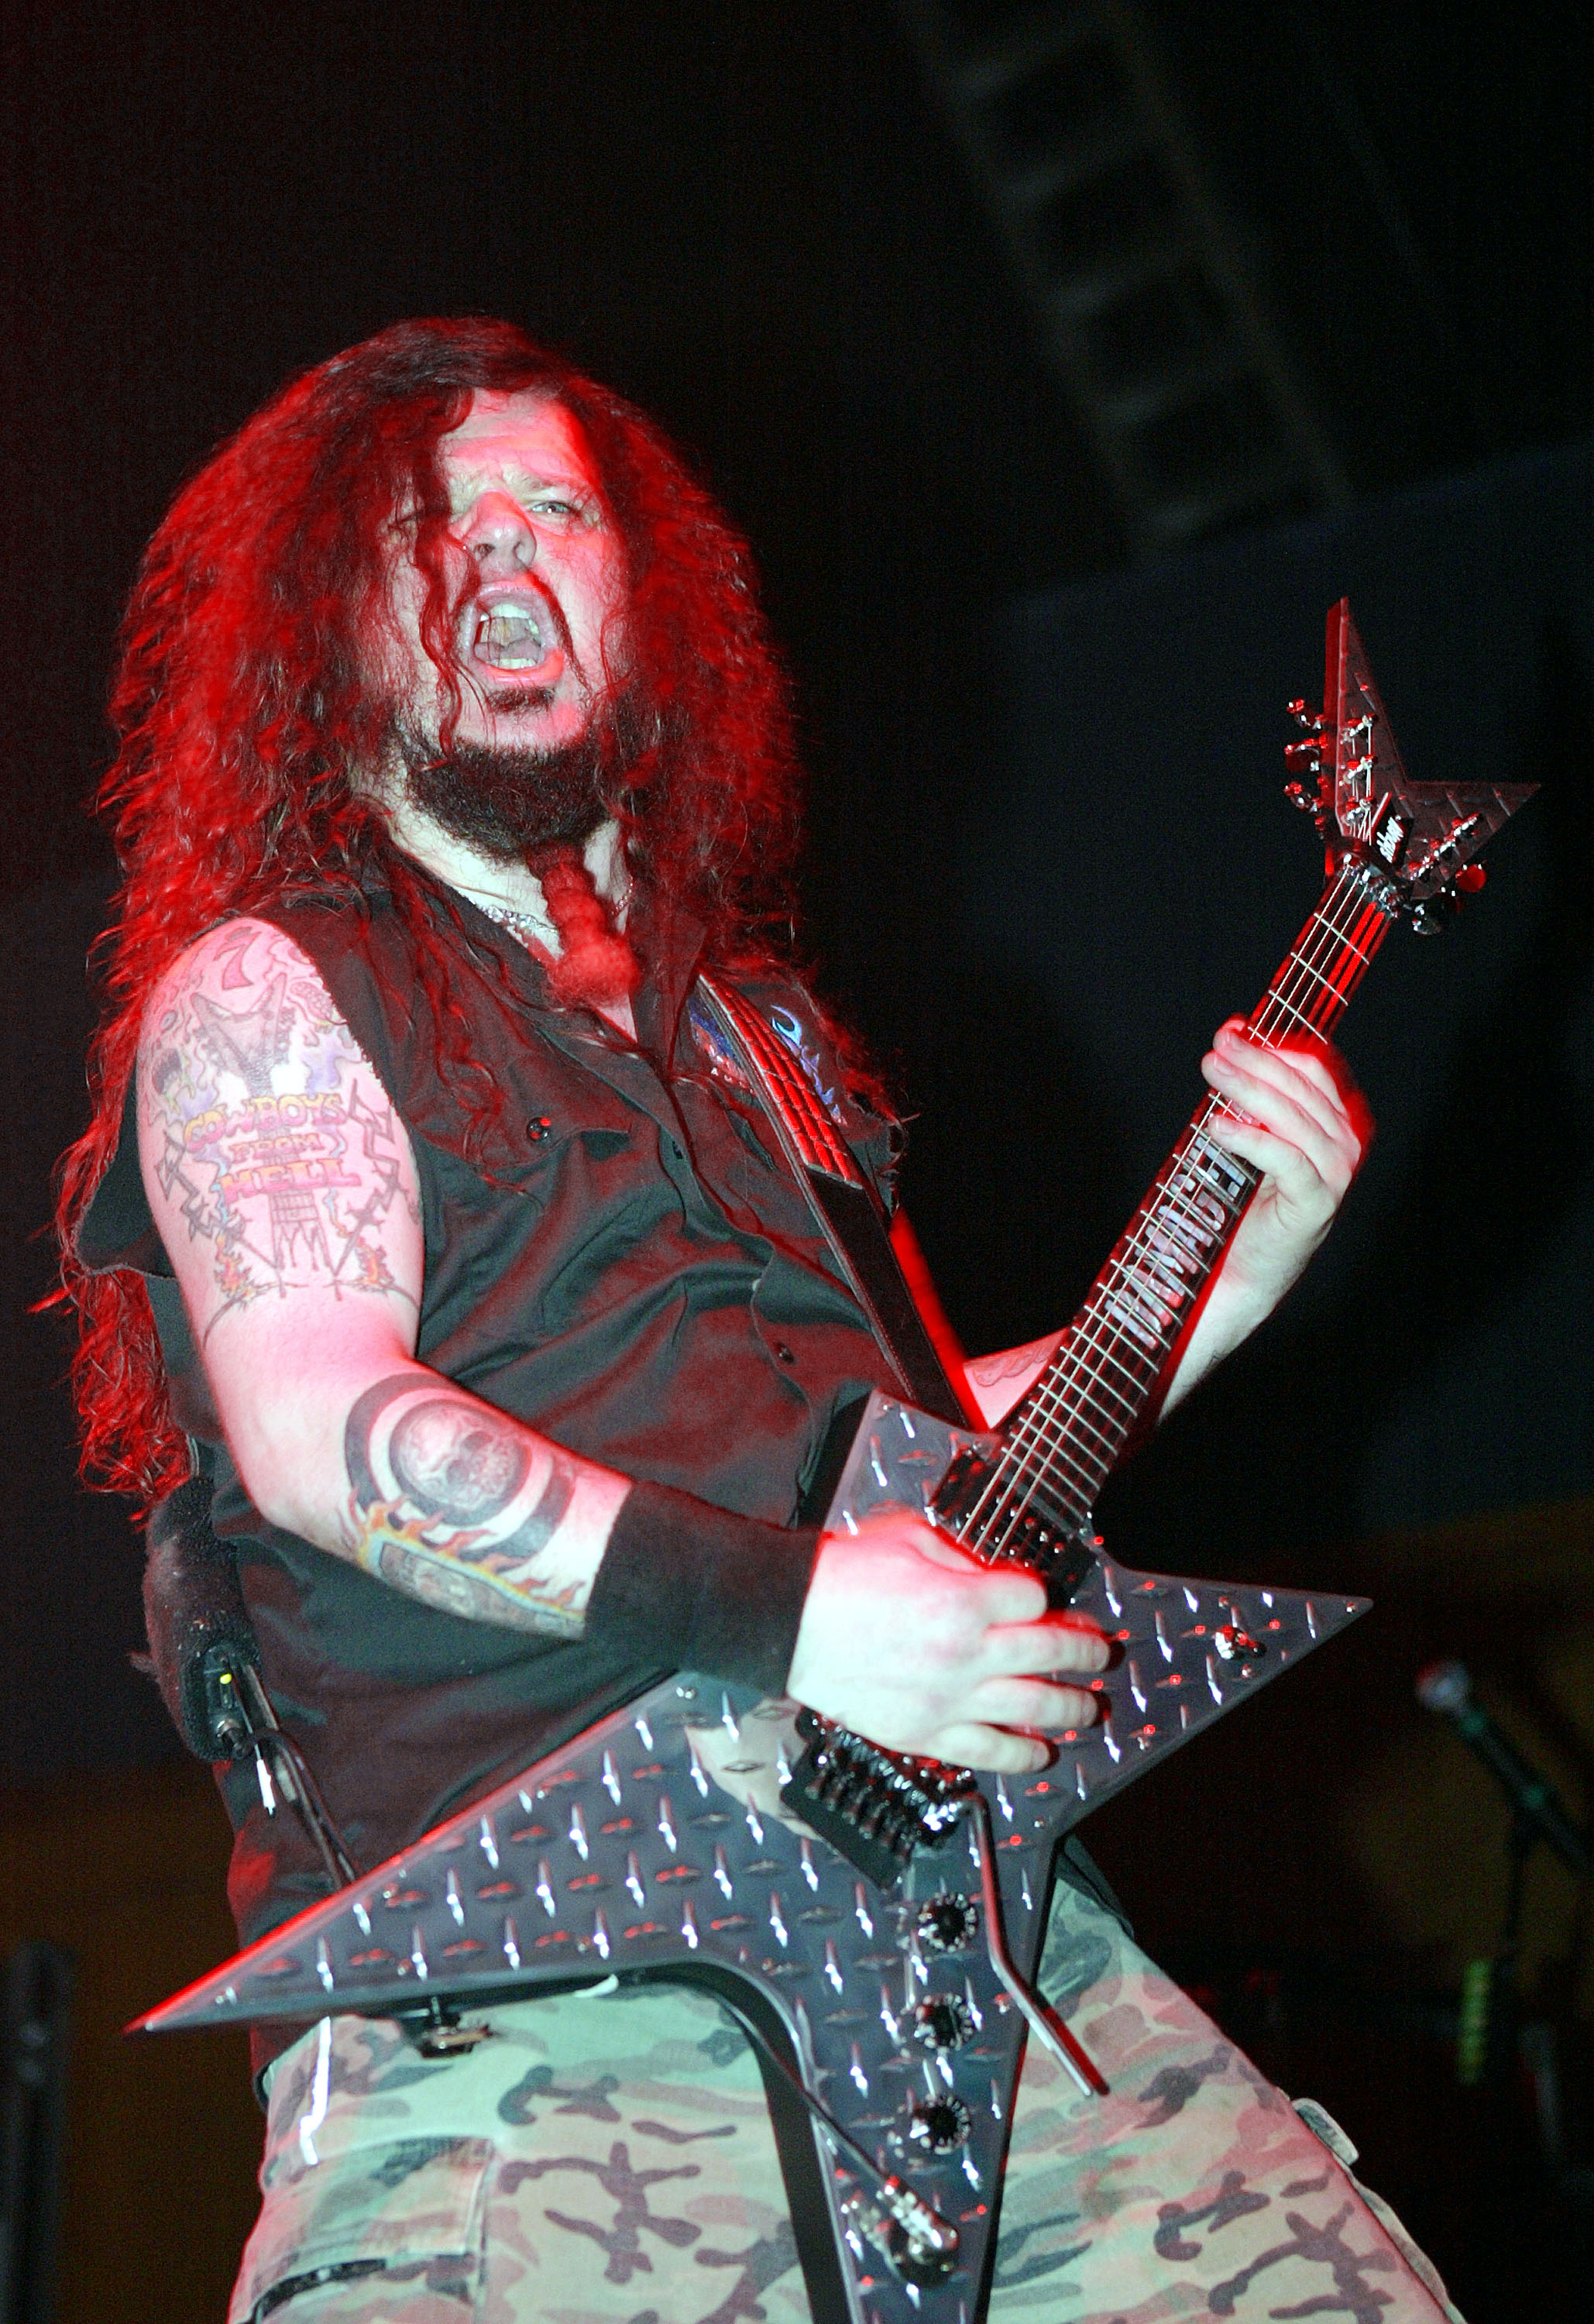 Даймбег Даръл е американски музикант, китарист, бек вокалист и съосновател на метъл групите "Пантера" и Damageplan.На 8 декември 2004 г. Даймбег Даръл е смъртоносно прострелян от фен по време на концерт в Кълъмбъс, Охайо. Стрелецът е Нейтън Гейл, който улучва Даръл 3 пъти в главата. Убити са още трима, а ранените са 7.